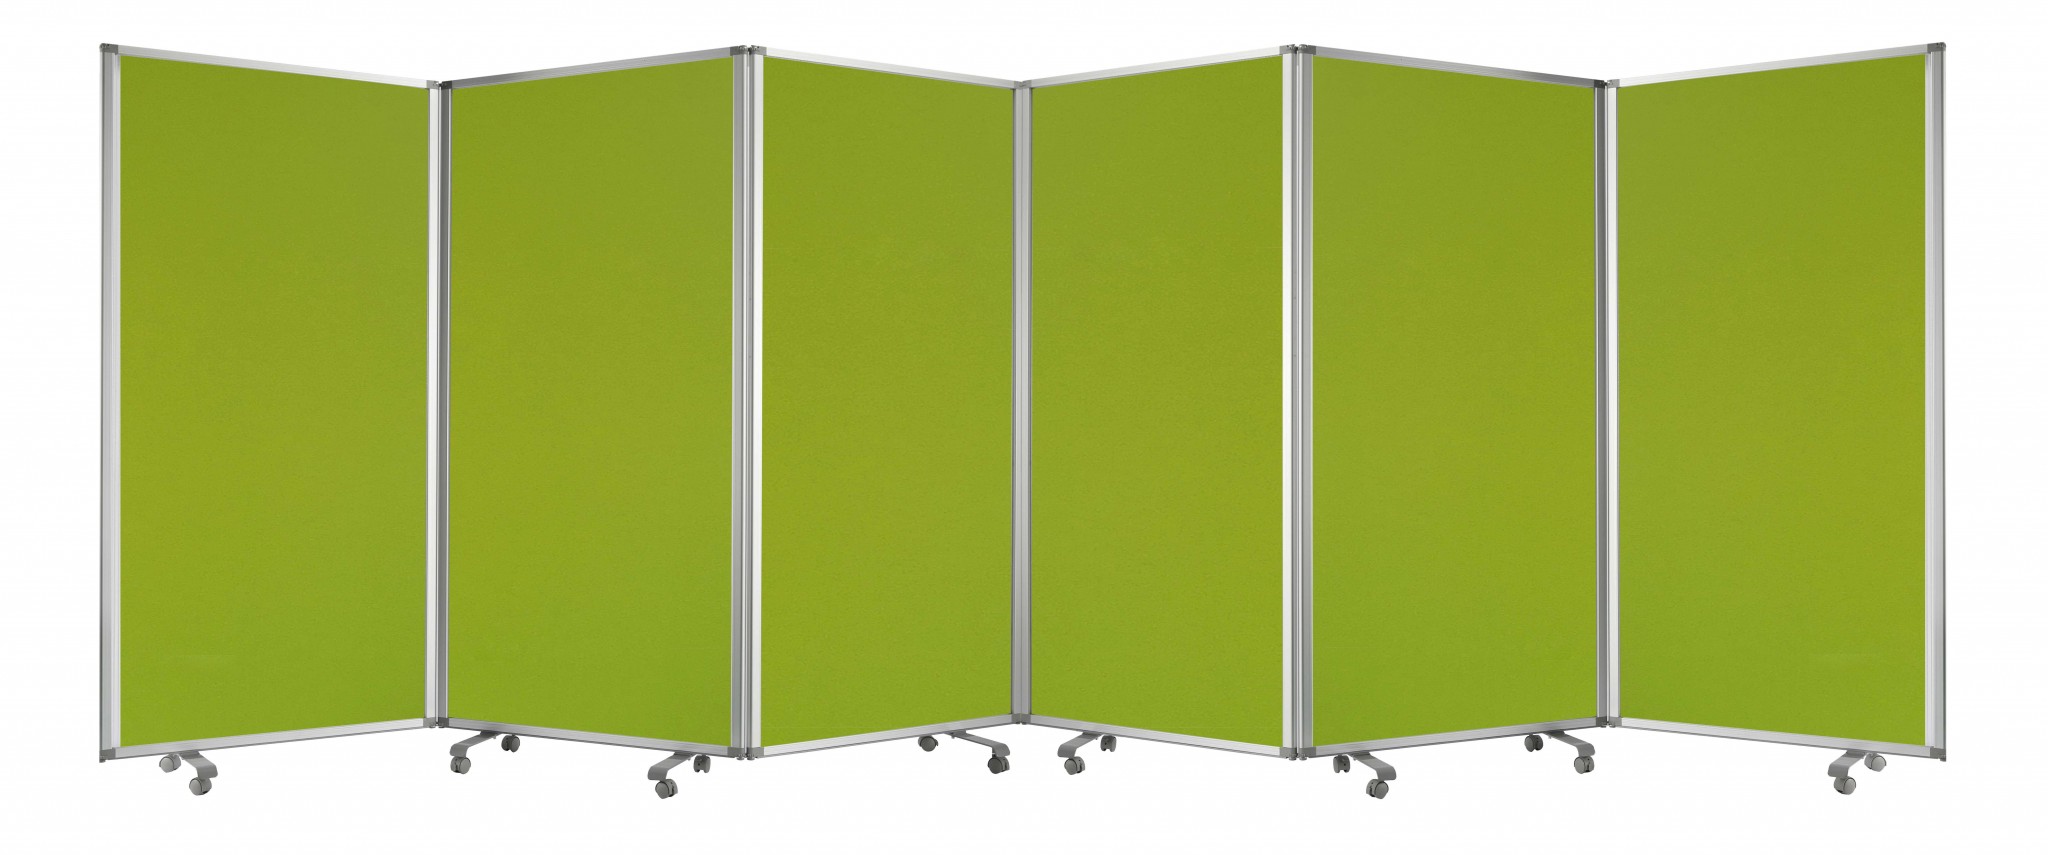 212 X 1 X 71 Green Metal 6 Panel Screen-370382-1